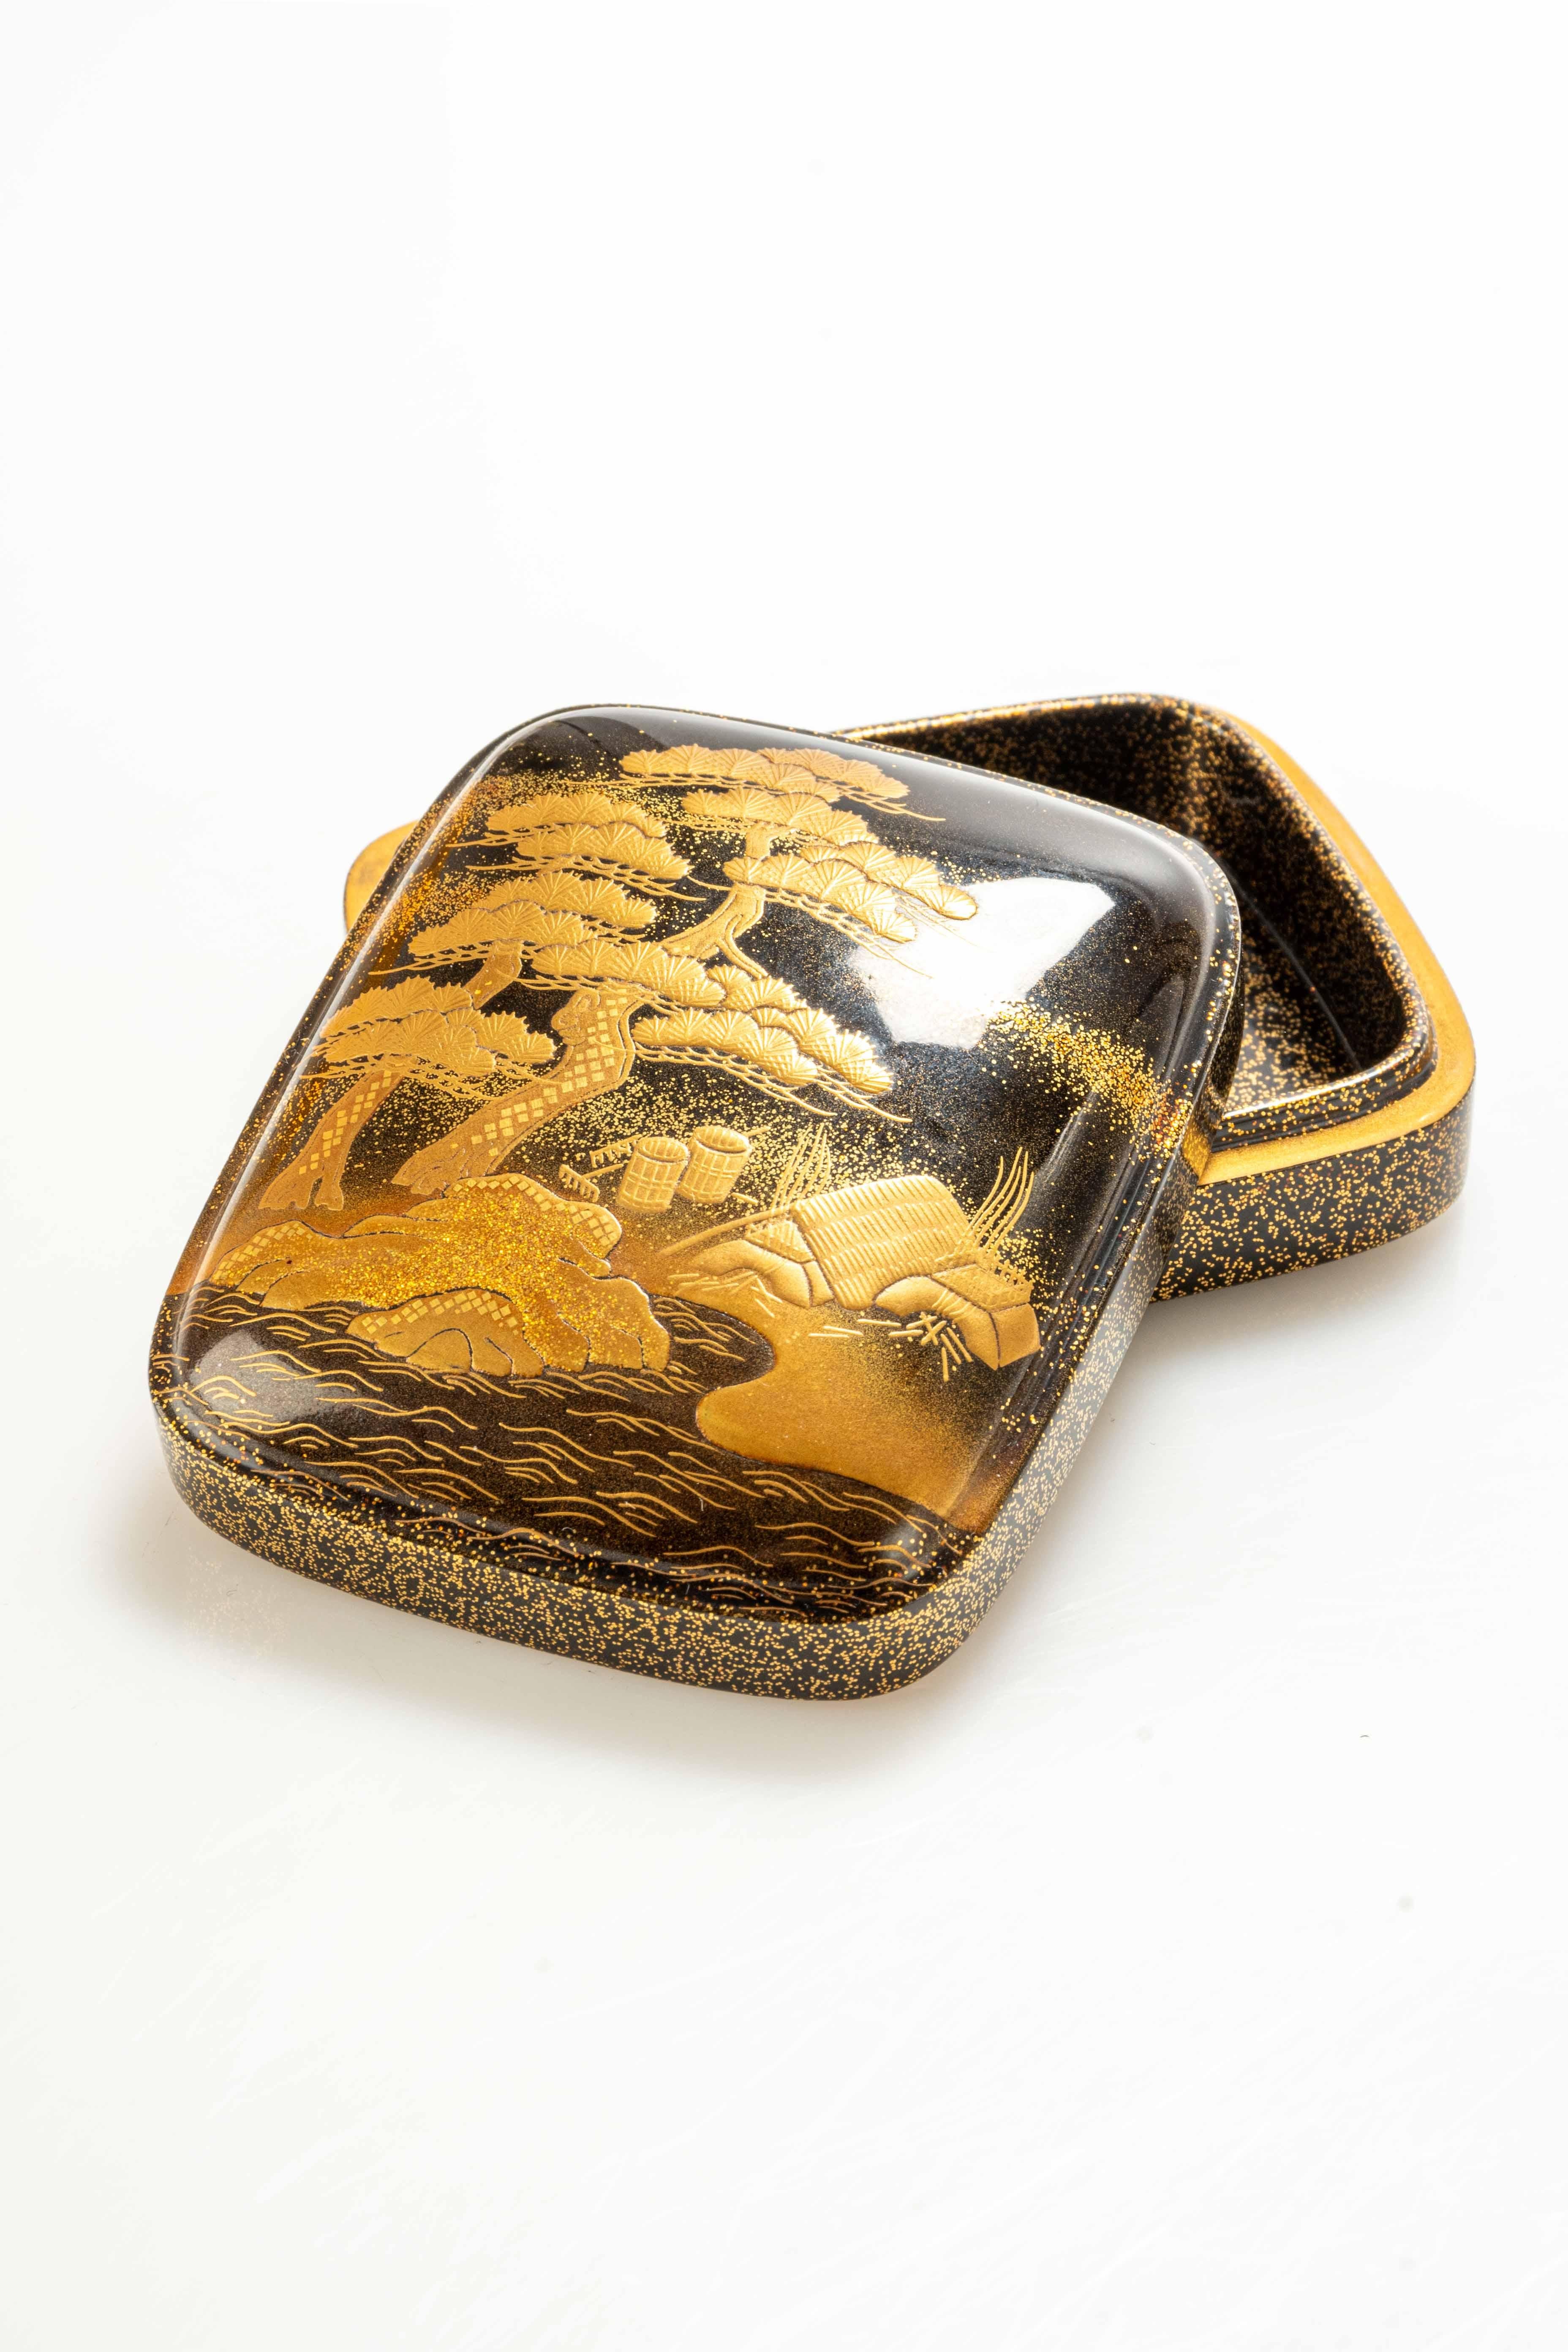 Boîte Kogo en laque maki-è, avec un couvercle bombé représentant une scène naturaliste. La décoration dorée représente le pin japonais, appelé Matsu, et une maison typique au toit de chaume au bord d'un cours d'eau.

Vendu avec son